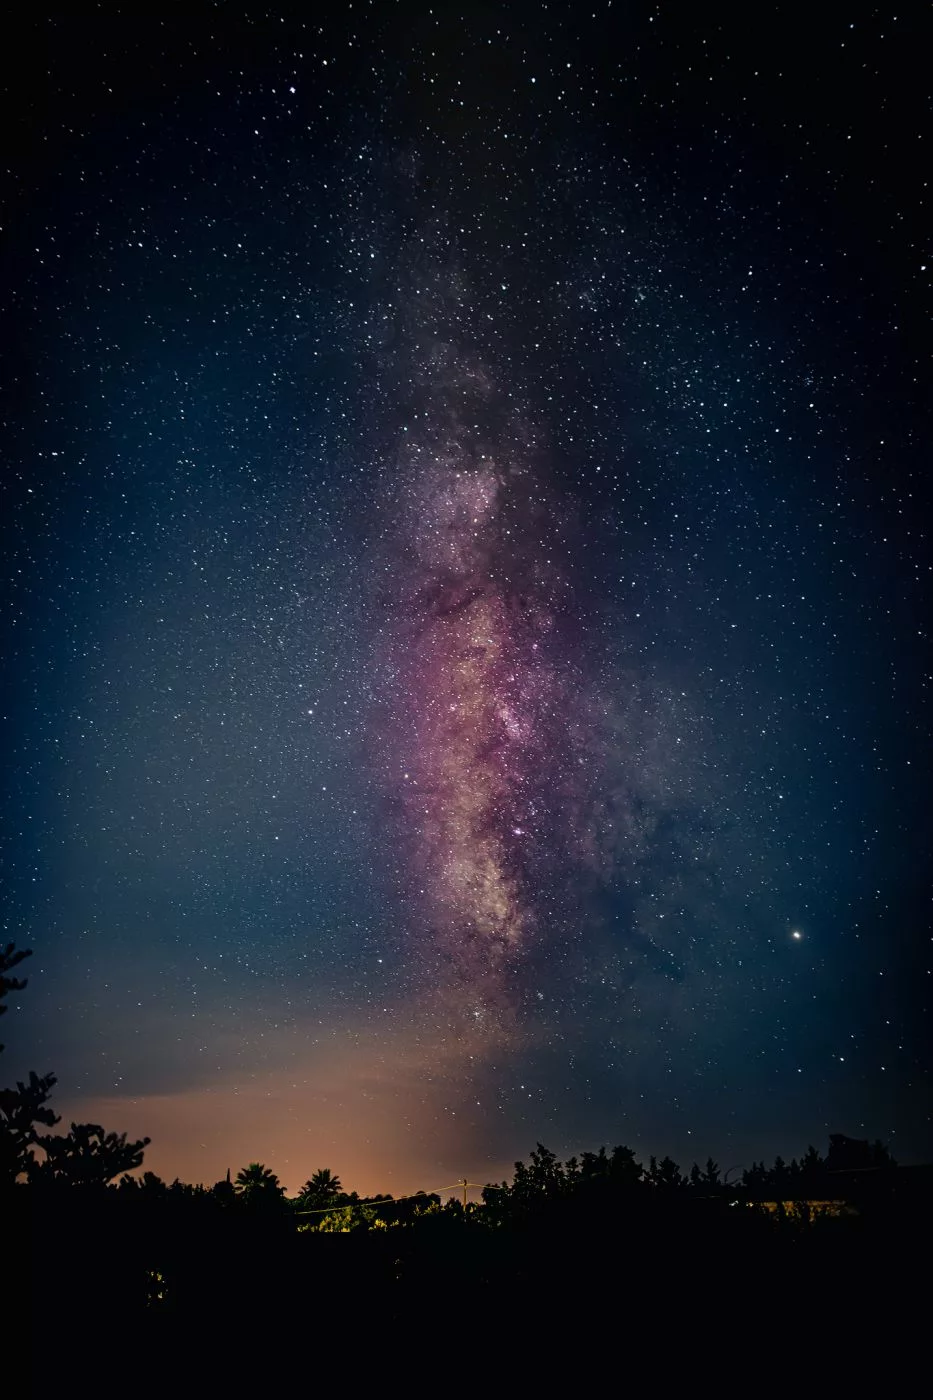 Milky Way in Sicily, Italy near Solarino (Siracusa), Italy